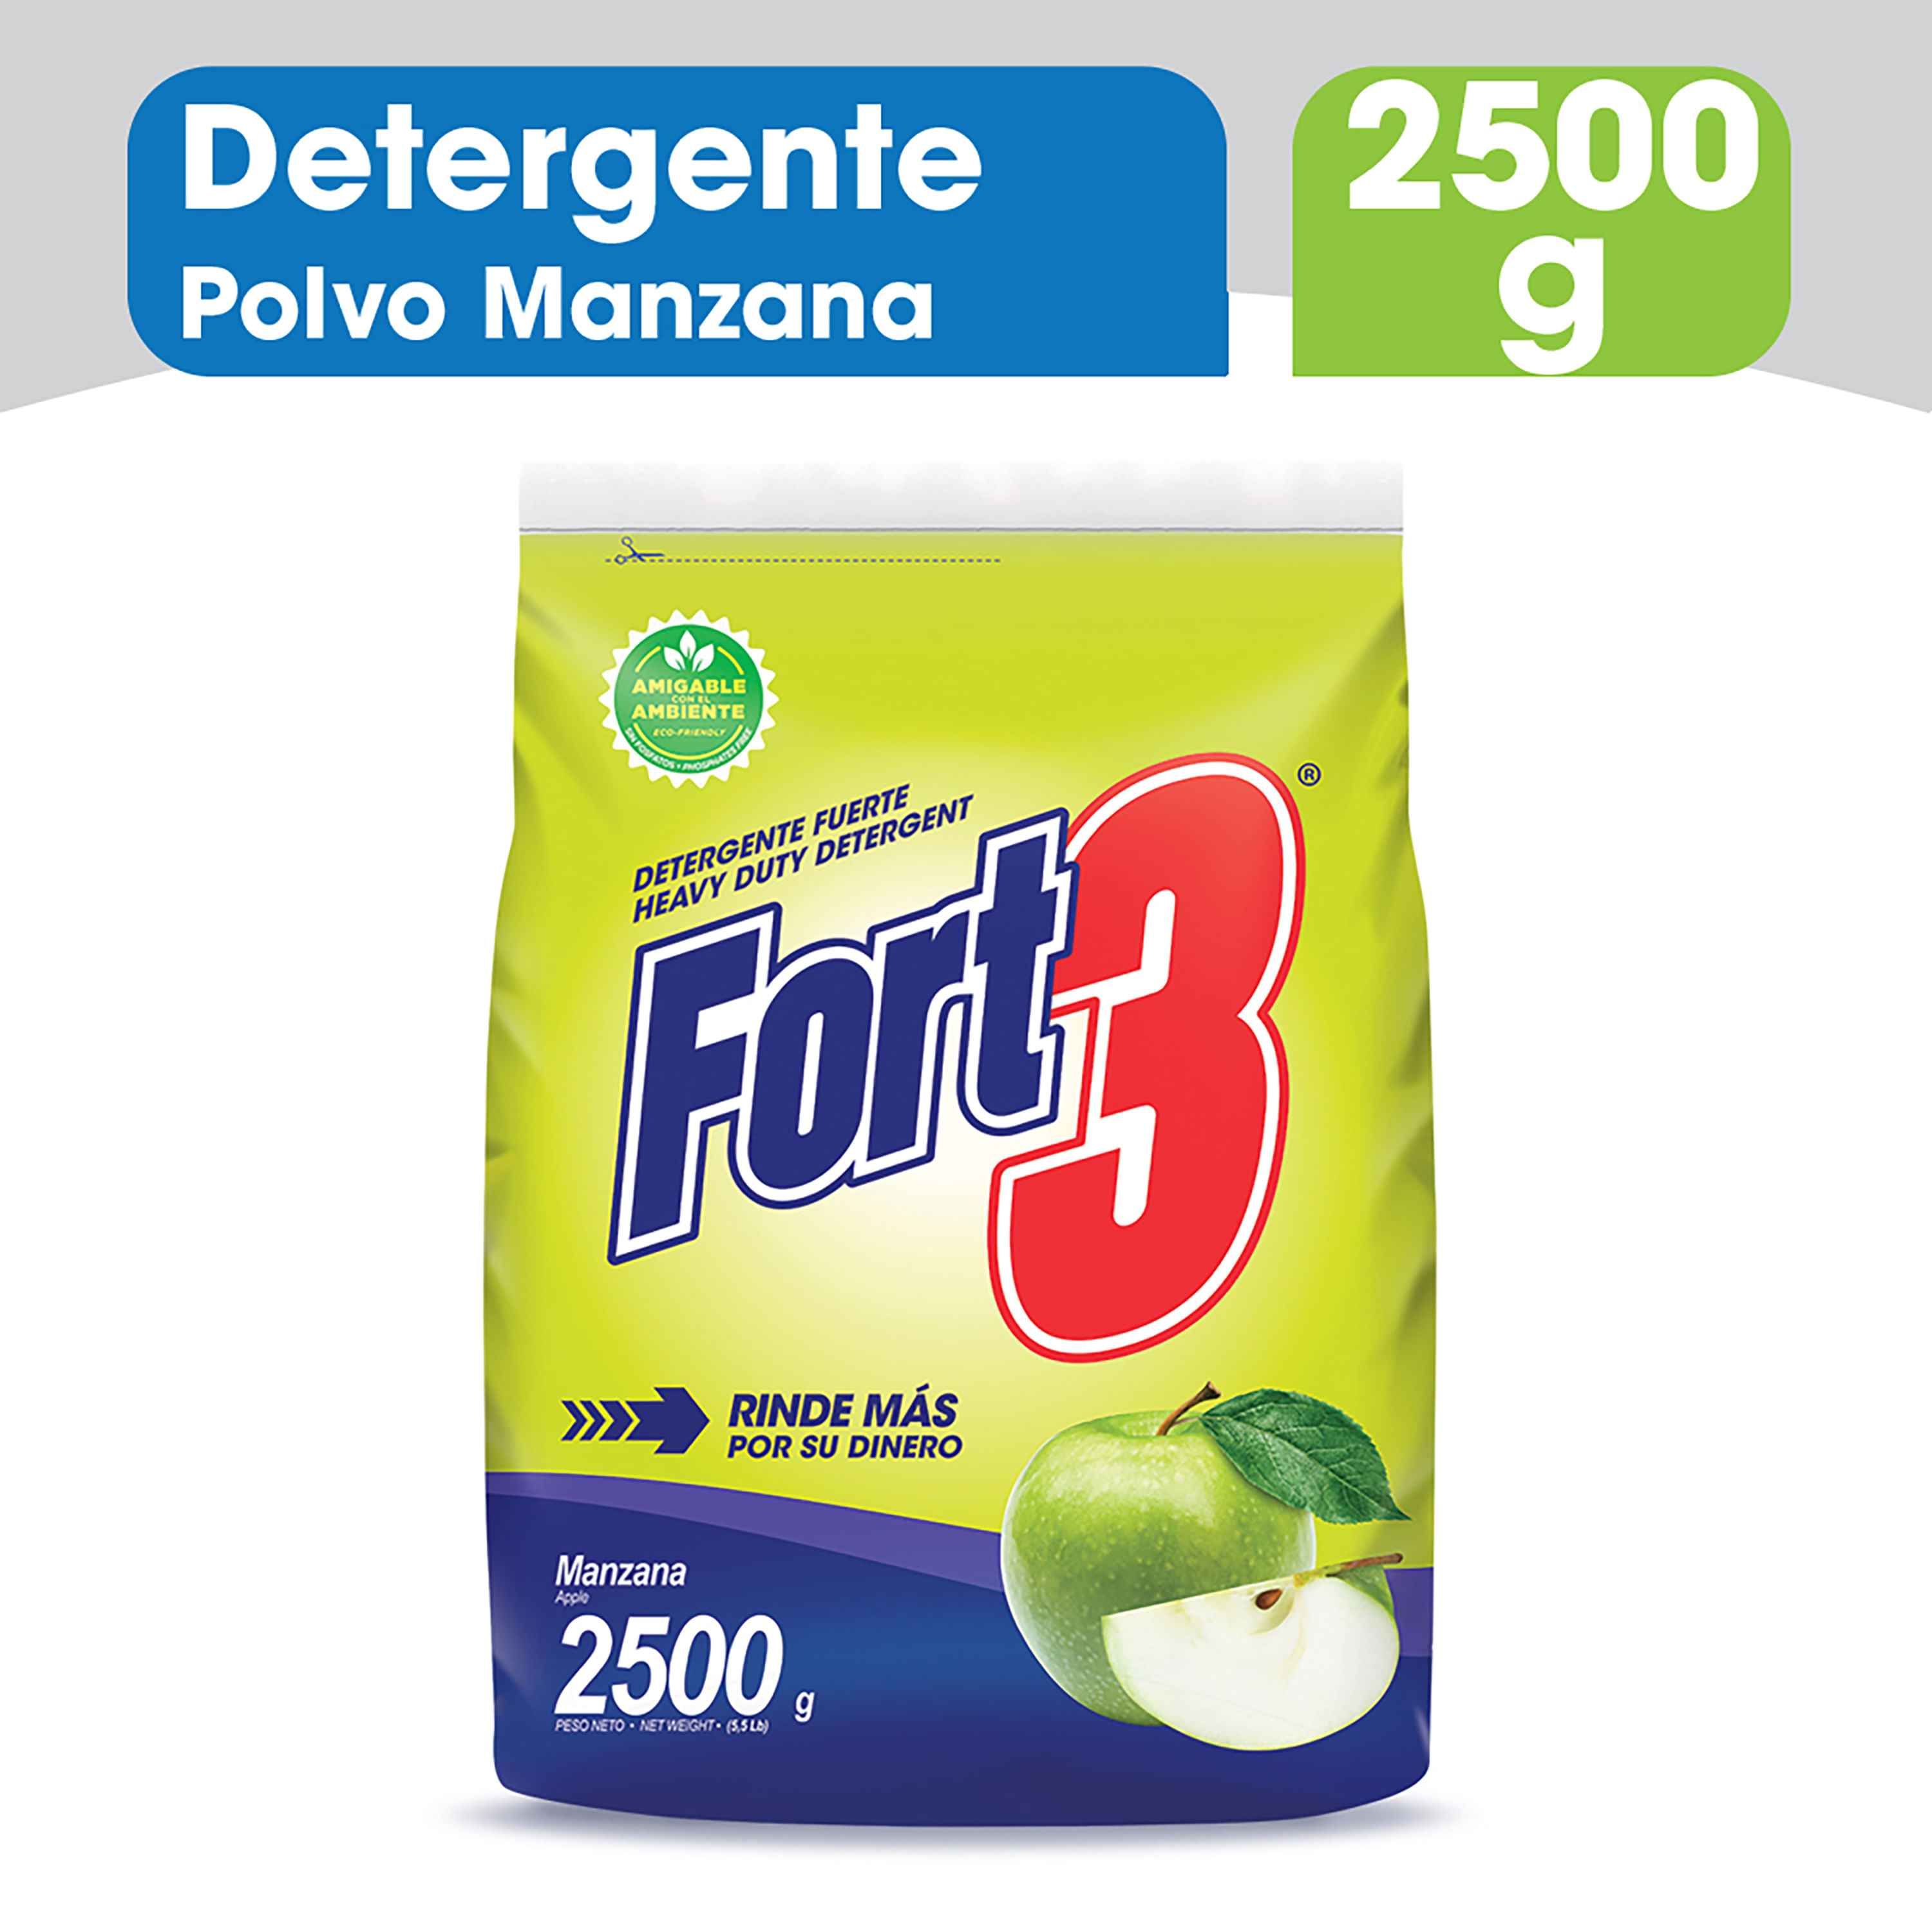 Detergente-En-Polvo-Marca-Fort3-Manzana-2500g-1-27851